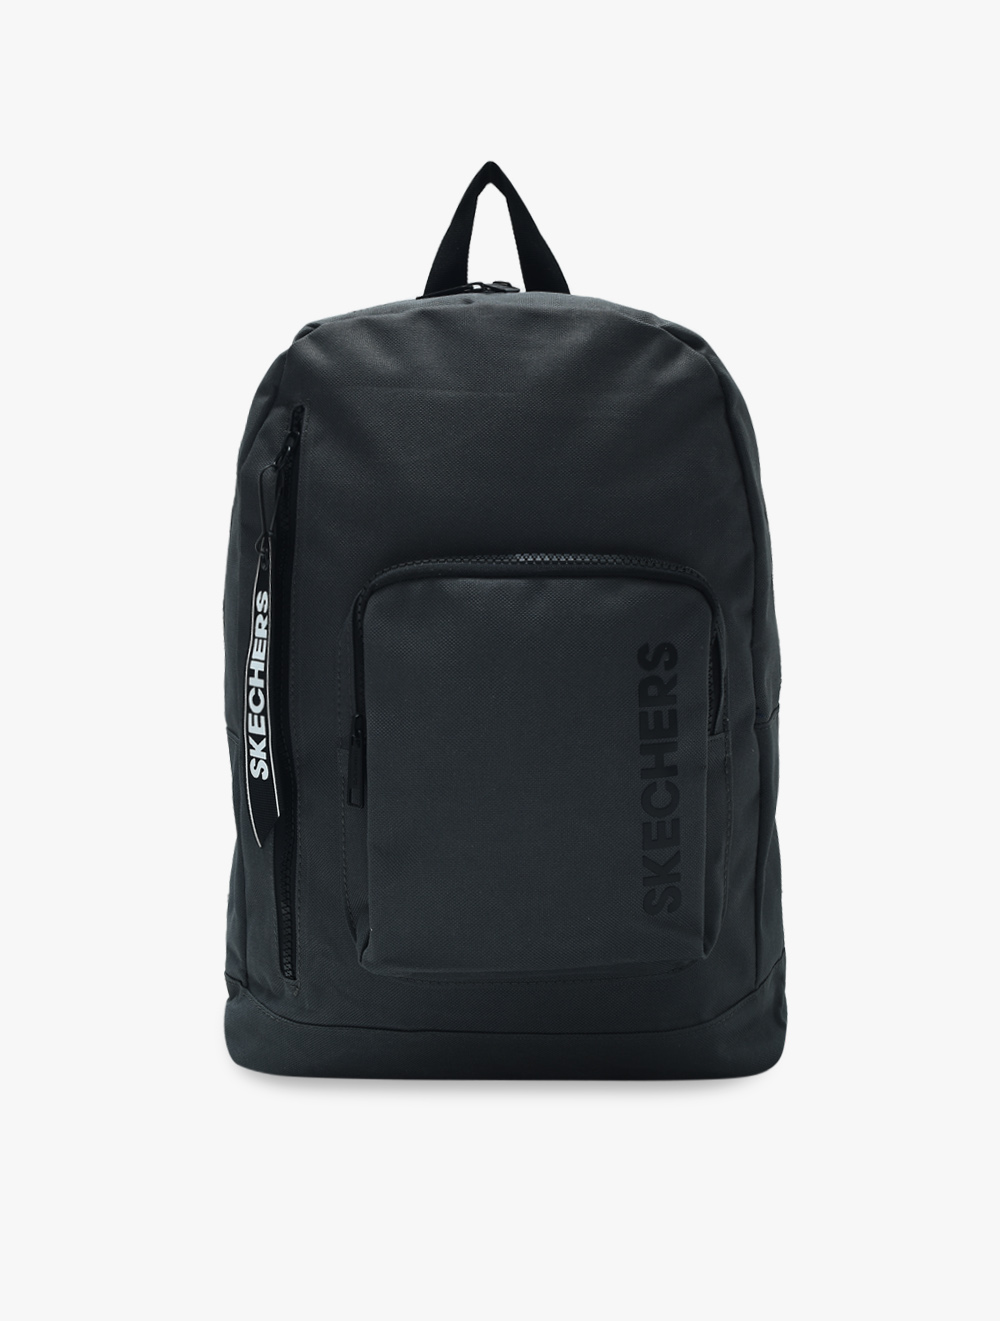 Skechers SP Basic S736 Unisex Backpack - Grey